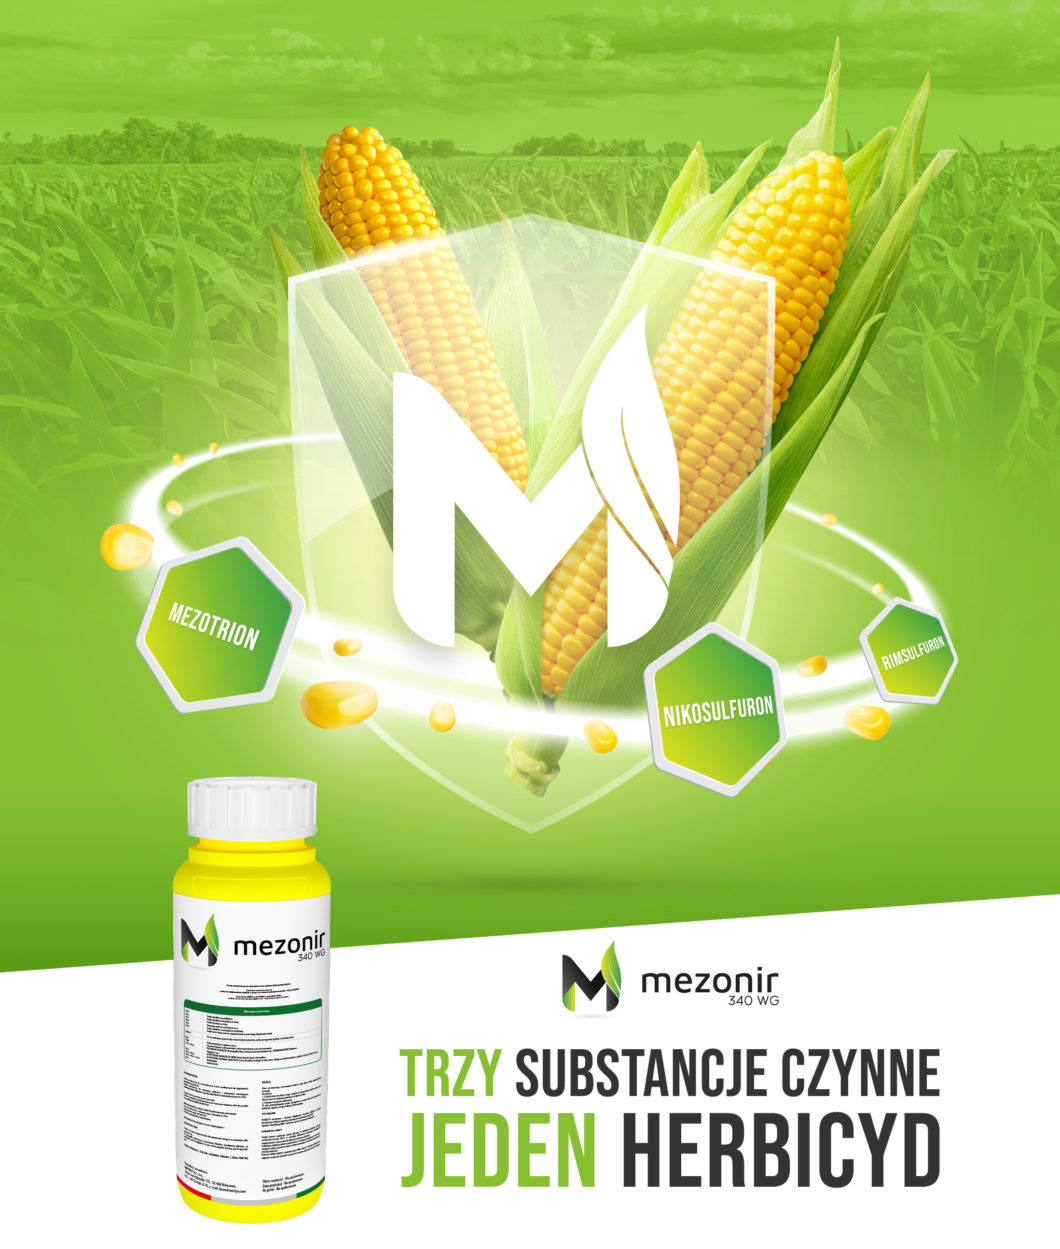 Zwalczanie chwastów w kukurydzy - herbicyd Meznornir 340 WG